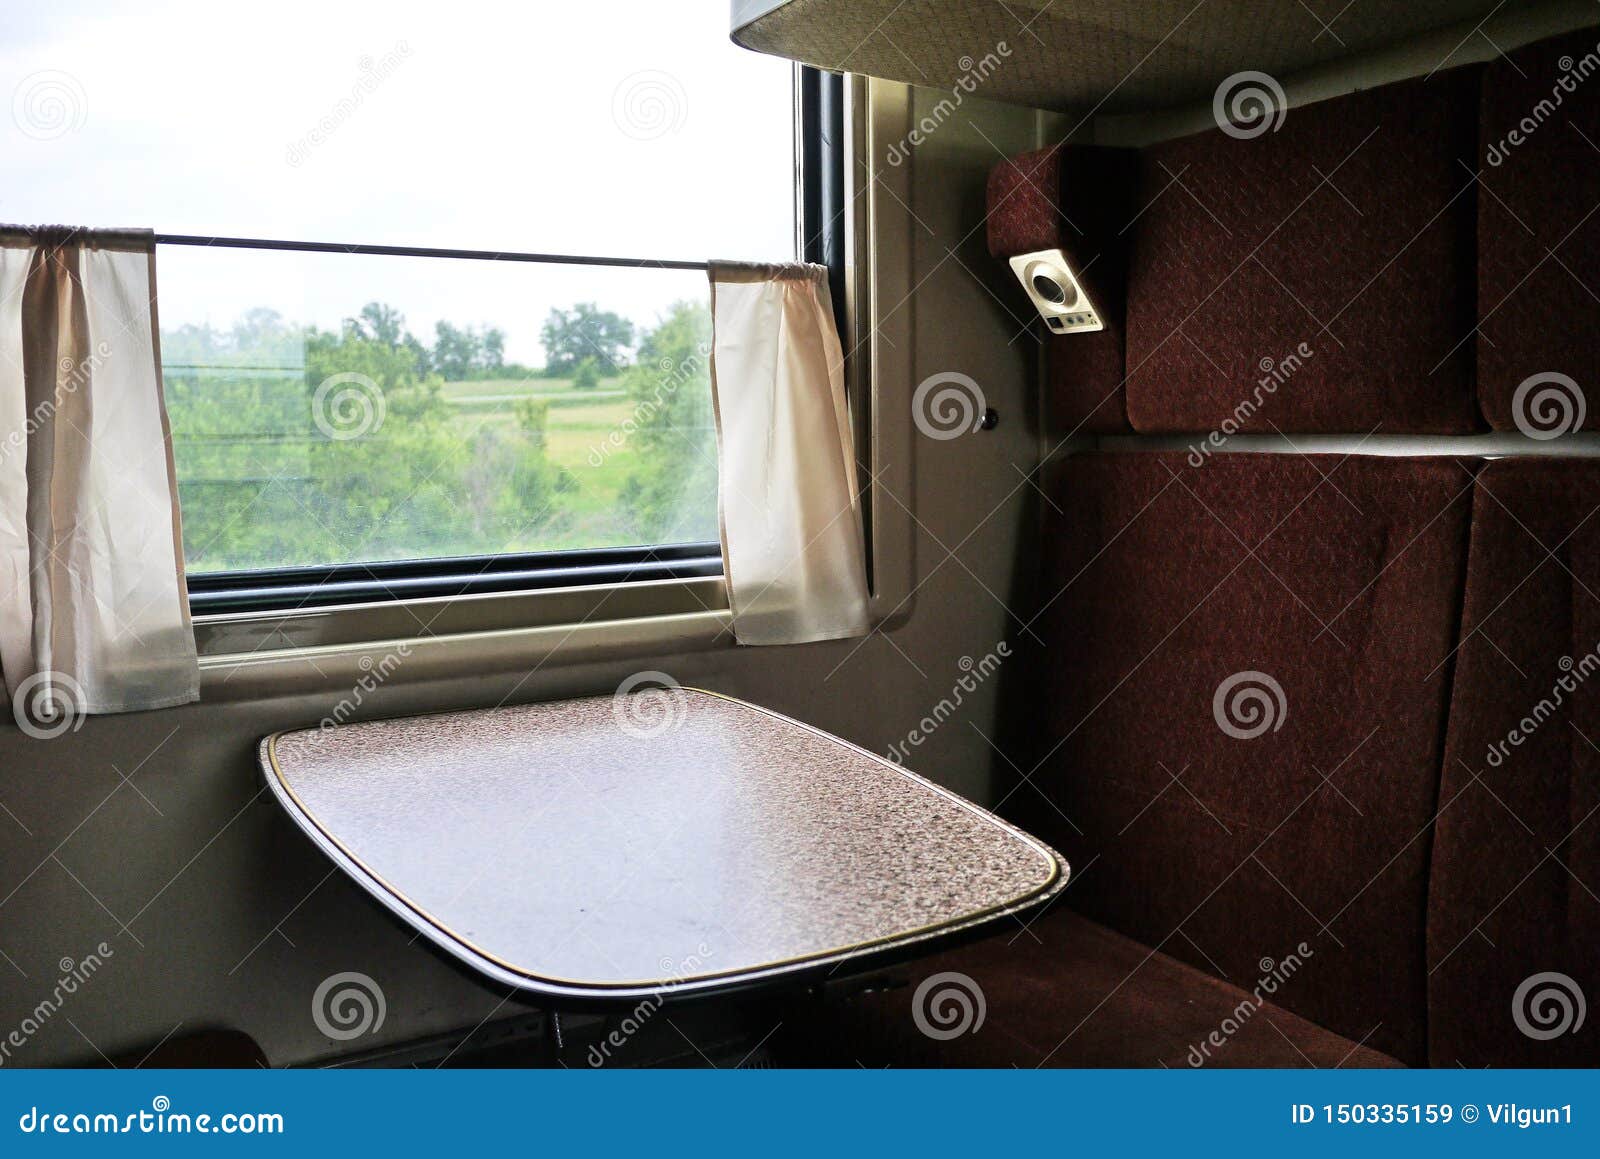 Шторки в вагонах. Купейный столик в вагоне. Занавески в поезде. Шторка для поезда. Столик в купе поезда.